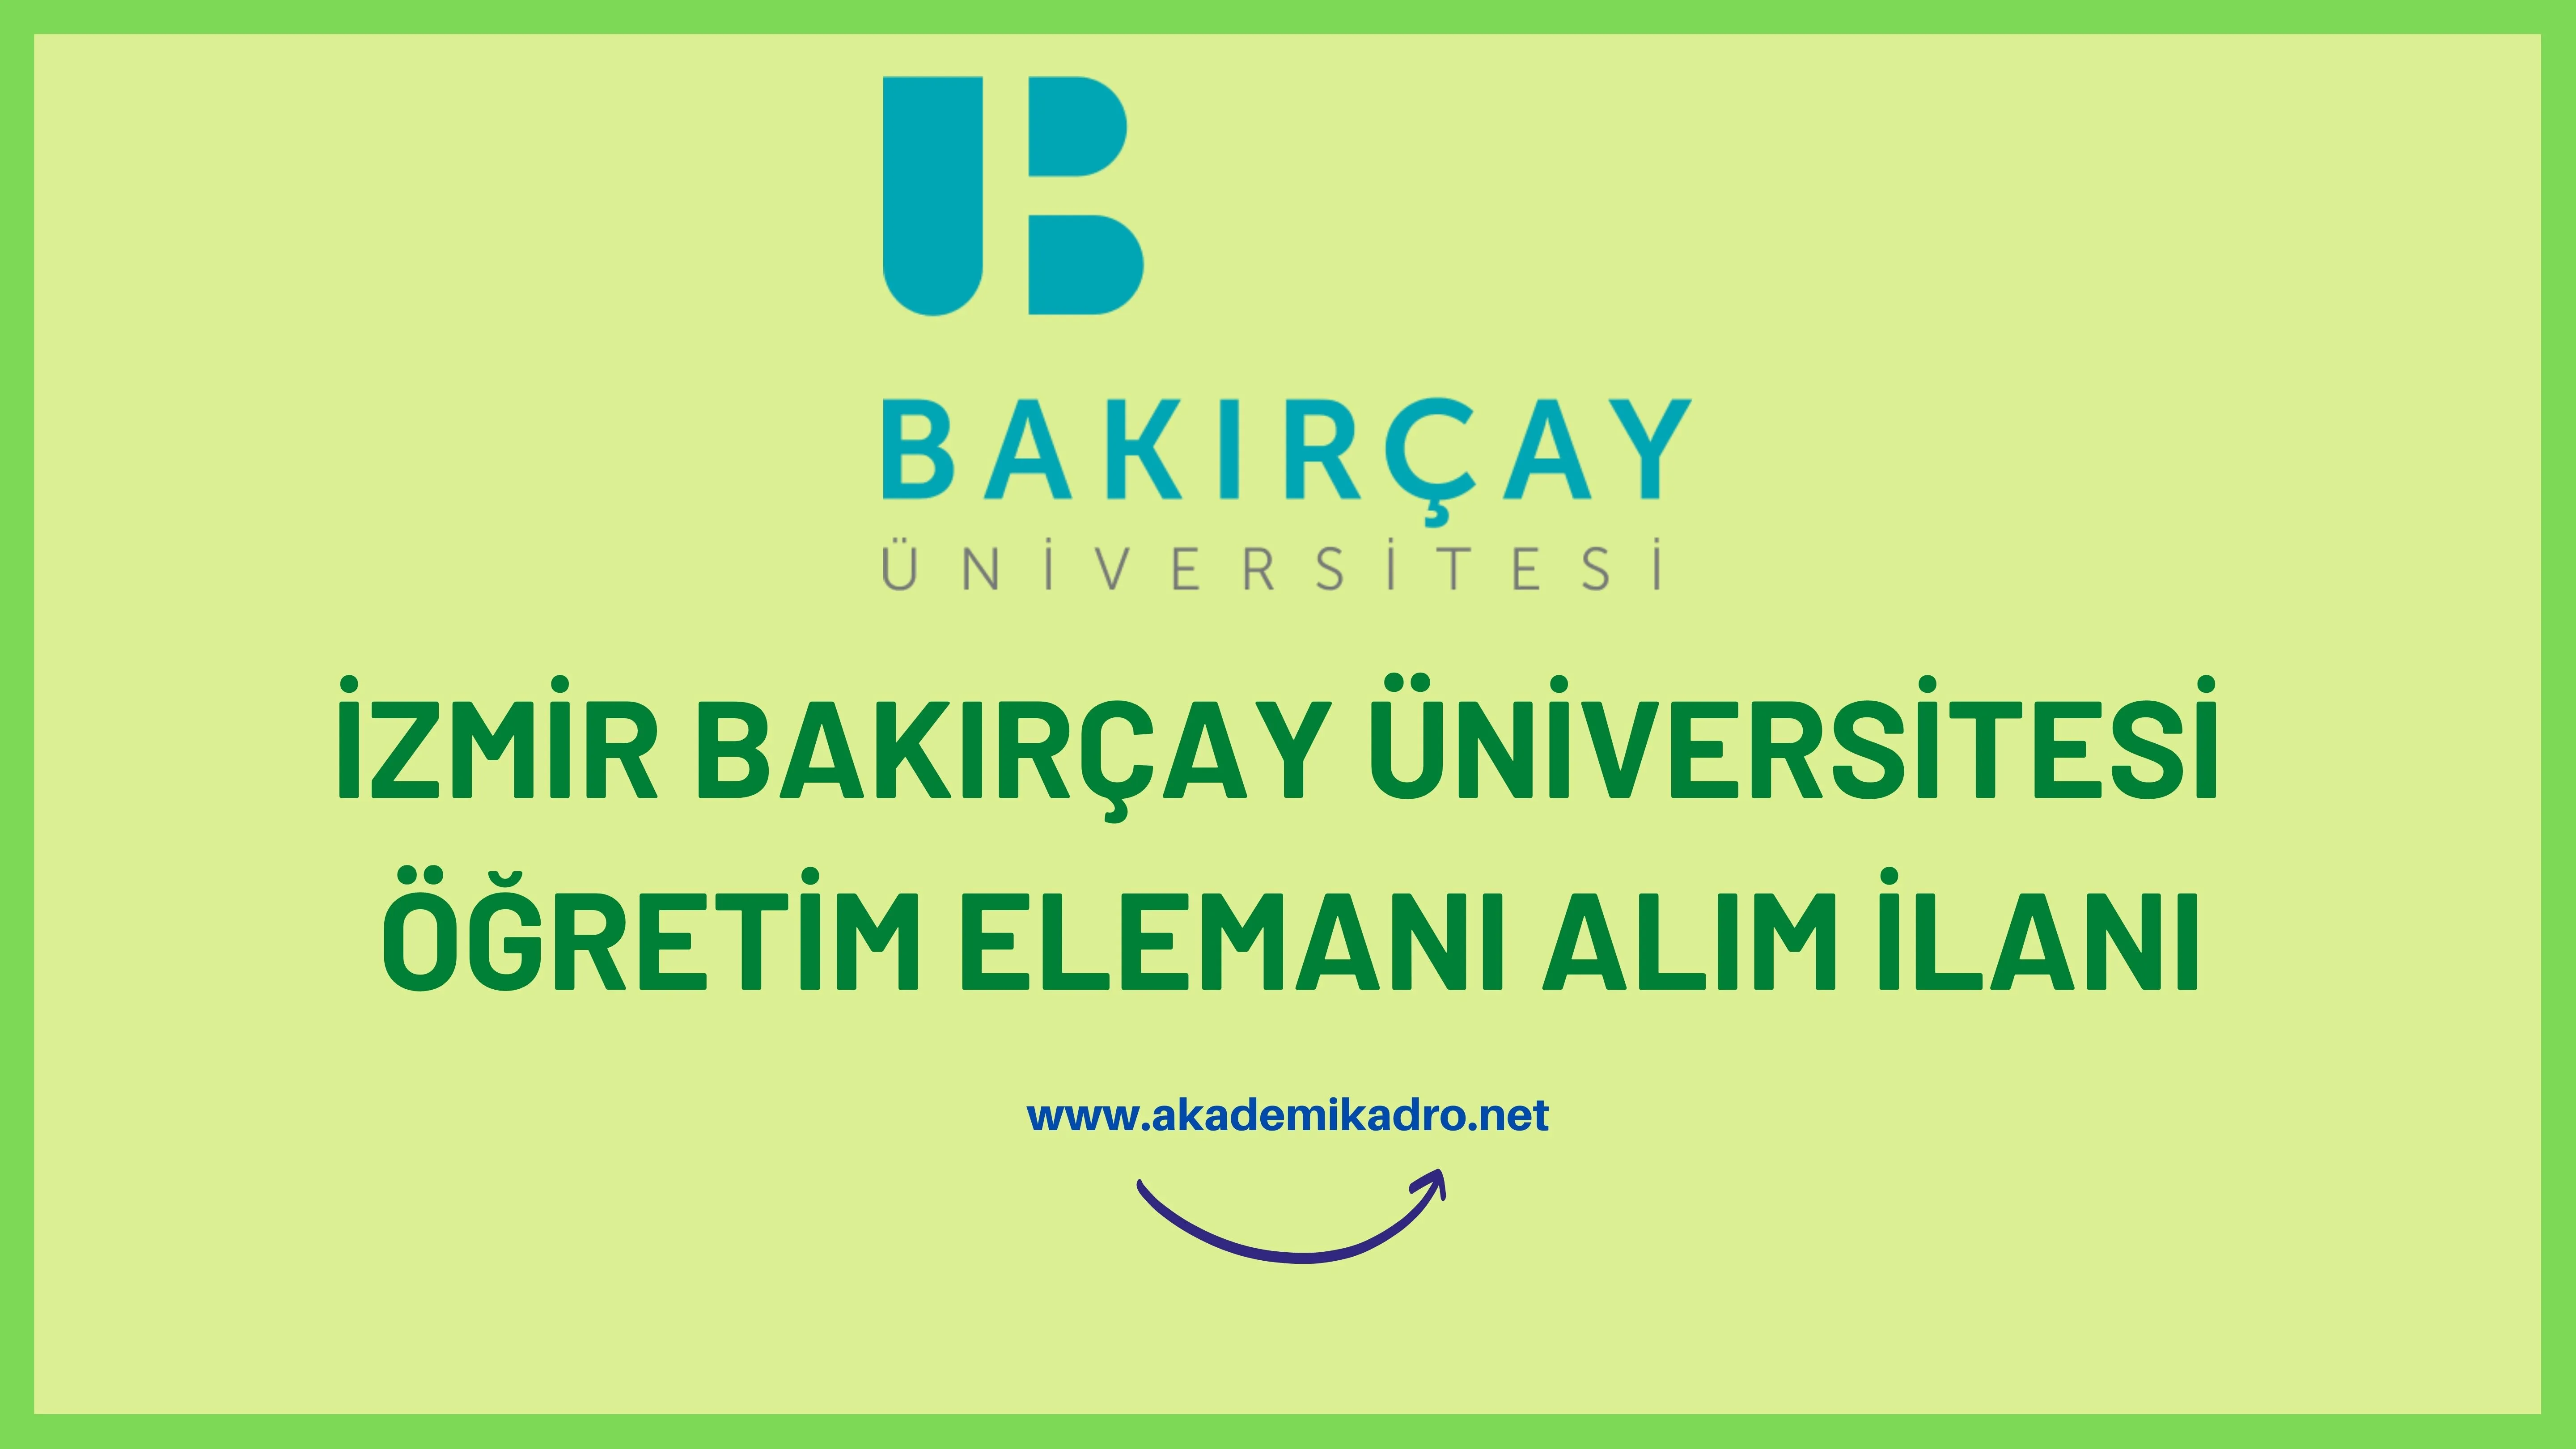 İzmir Bakırçay Üniversitesi 2 Araştırma görevlisi ve 17 öğretim üyesi alacaktır.